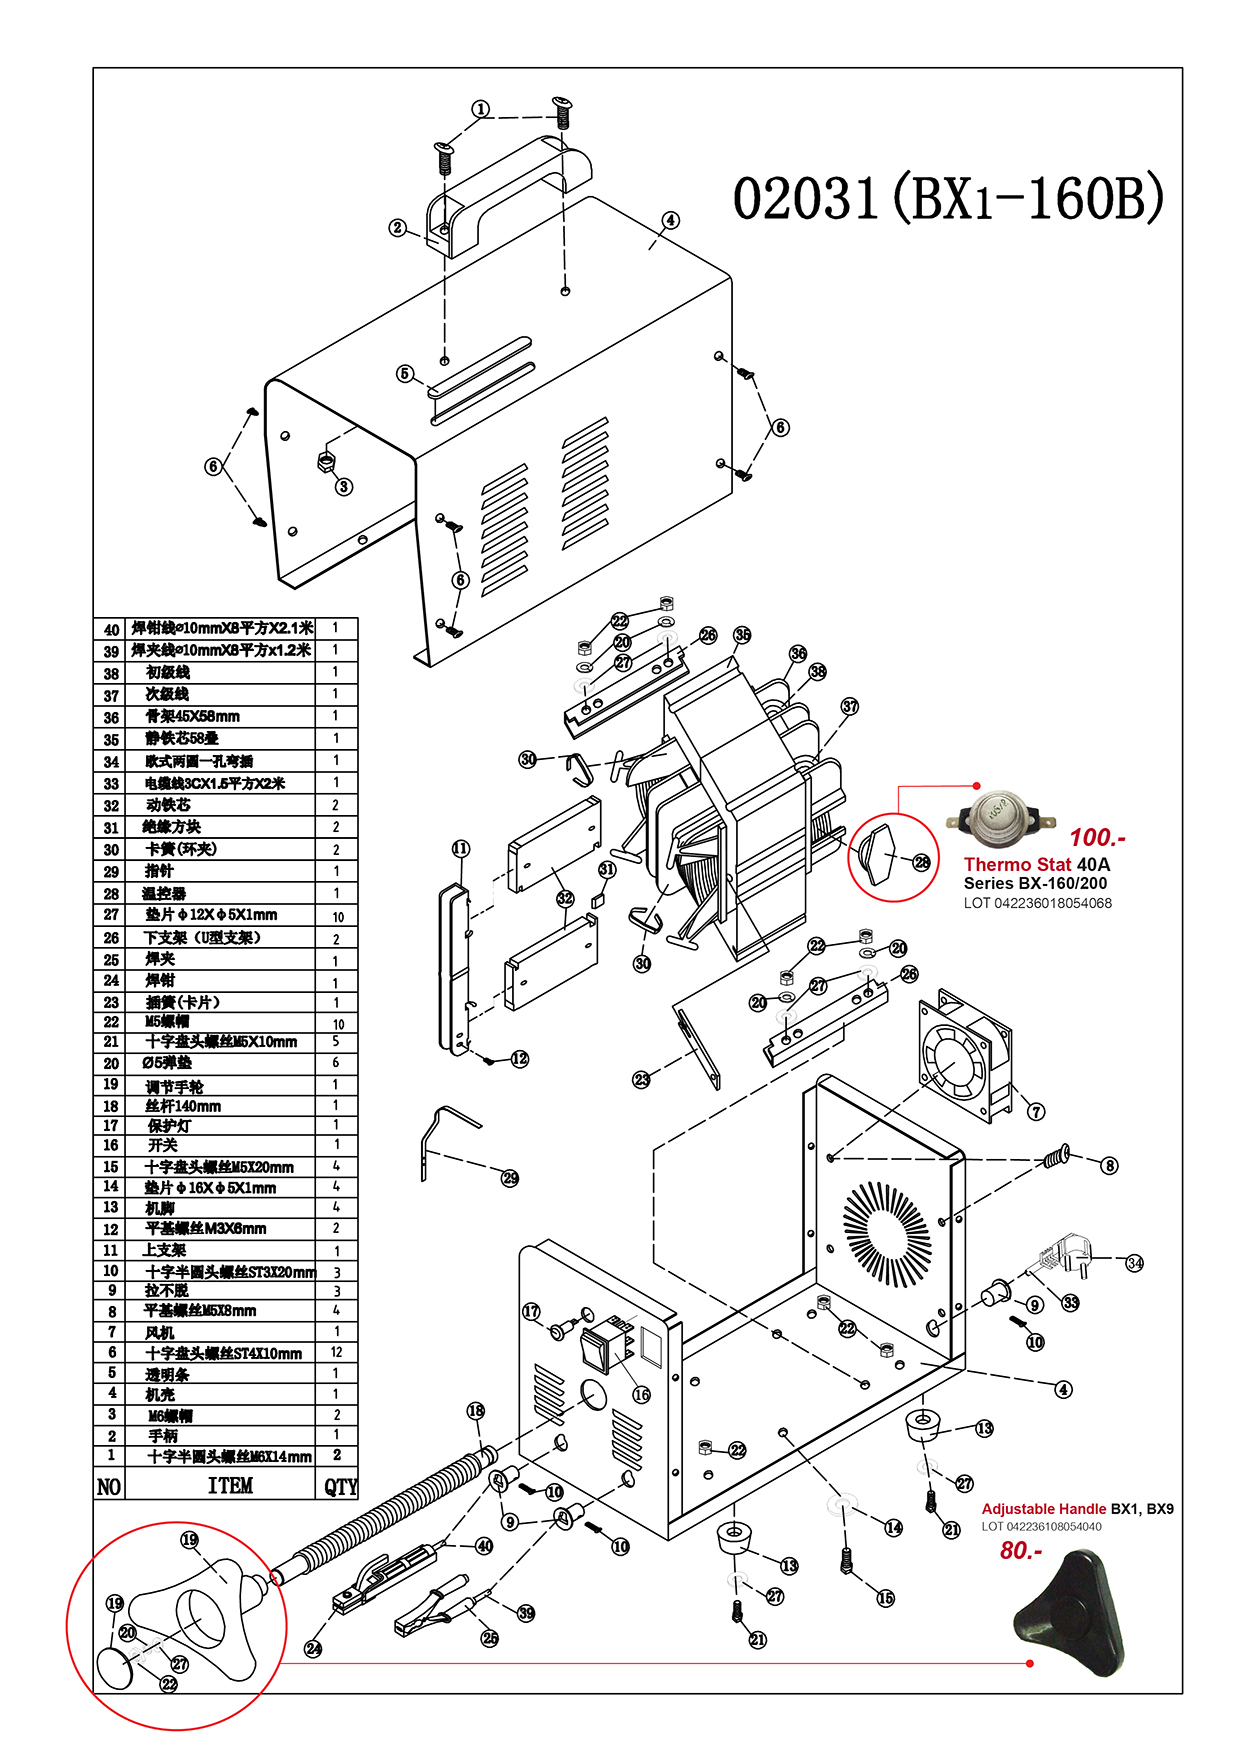 (93/303) เครื่องเชื่อมไฟฟ้า - Welding Machine BX6 Series